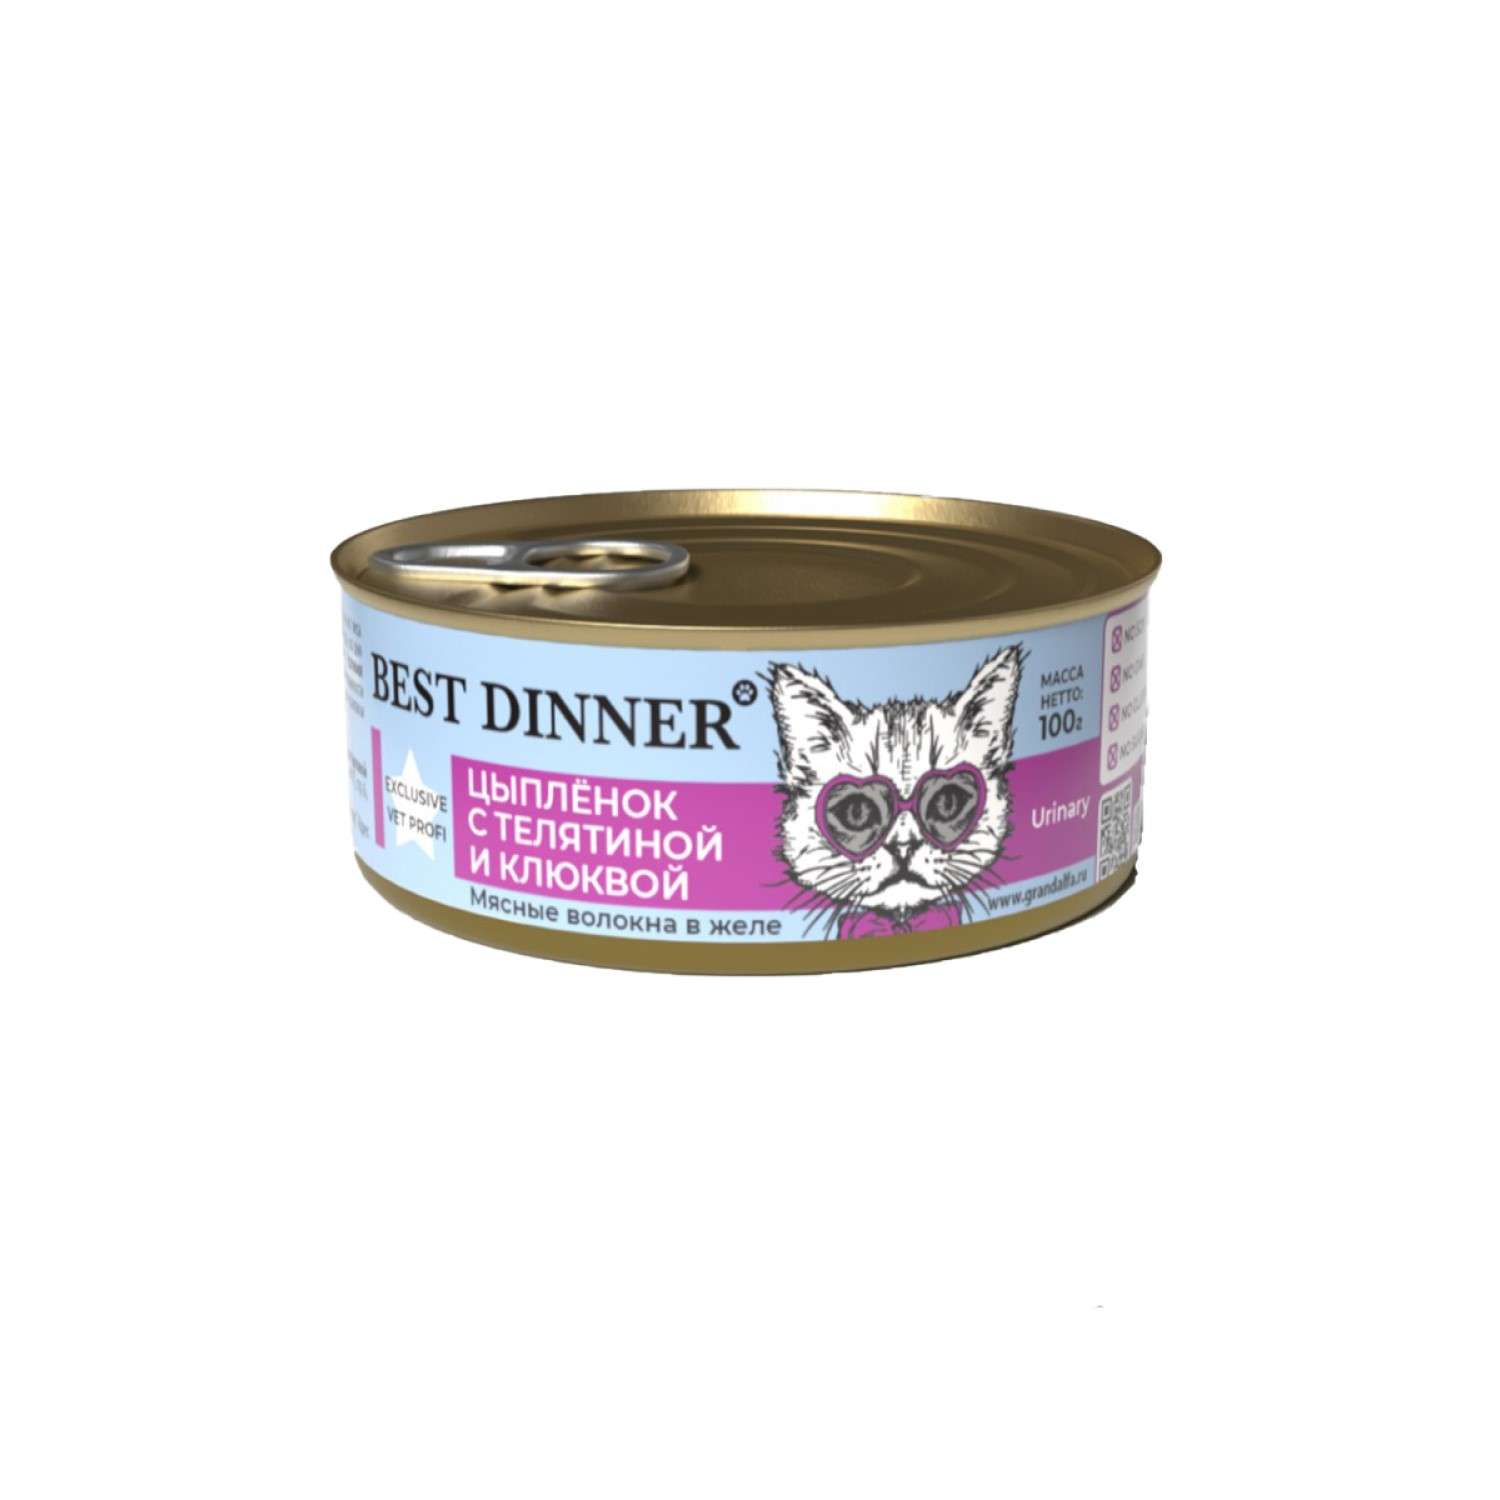 Корм для кошек Best Dinner 0.1кг Exclusive Vet Profi Urinary цыпленок с телятиной и клюквой - фото 1